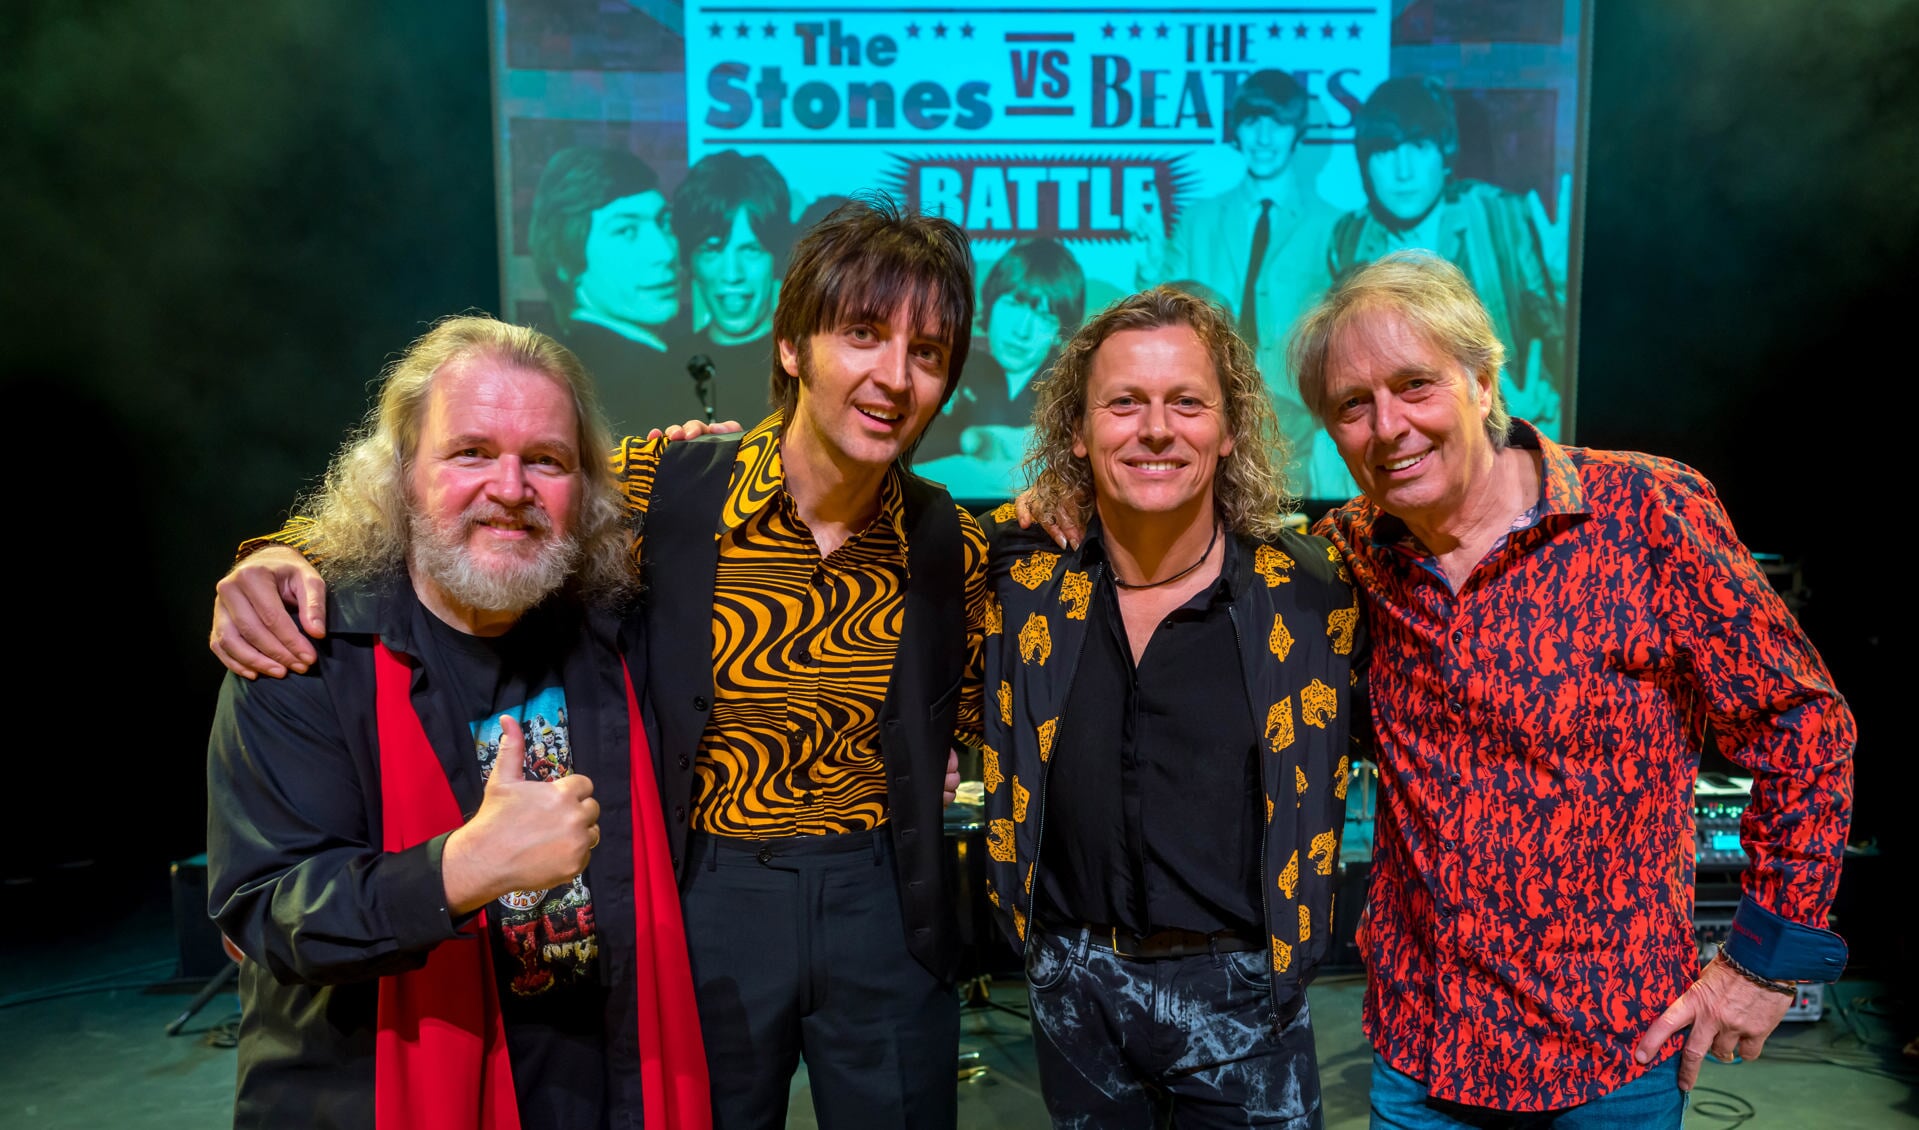 Edward Reekers, Emanuele Angeletti, Syb van der Ploeg en Harry Sacksioni gaan met elkaar battlen: The Beatles vs The Stones.